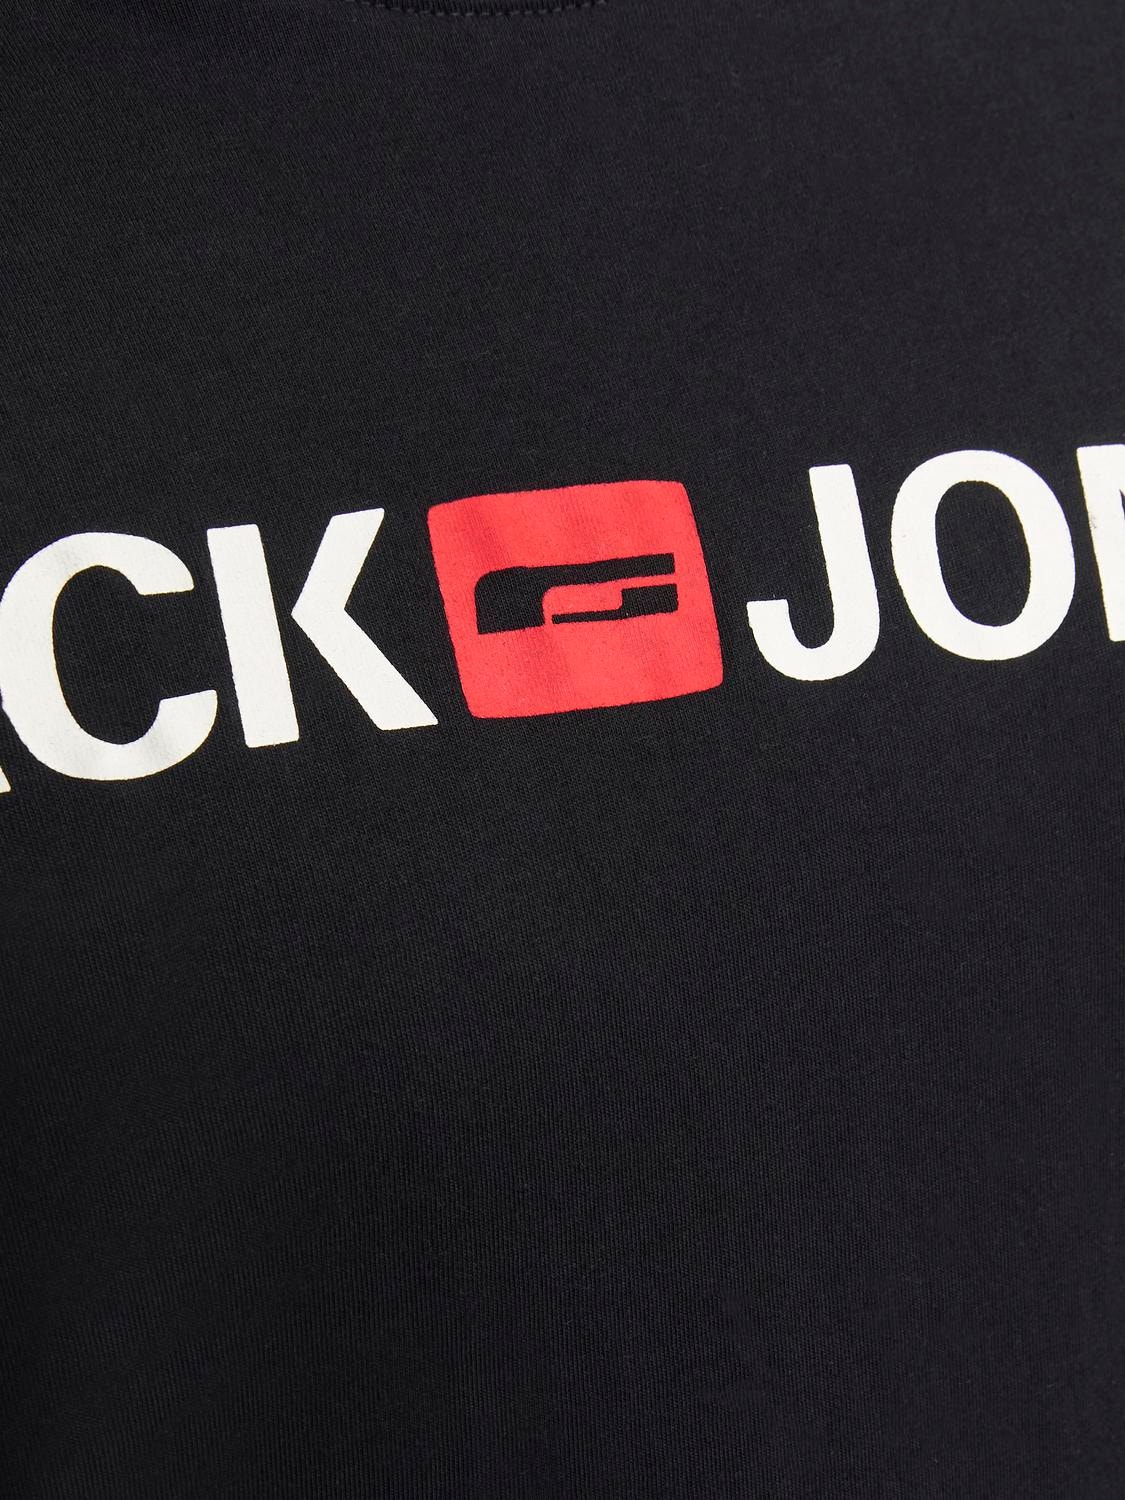 Jack & Jones Plus Size Logo T-shirt -Black - 12184987